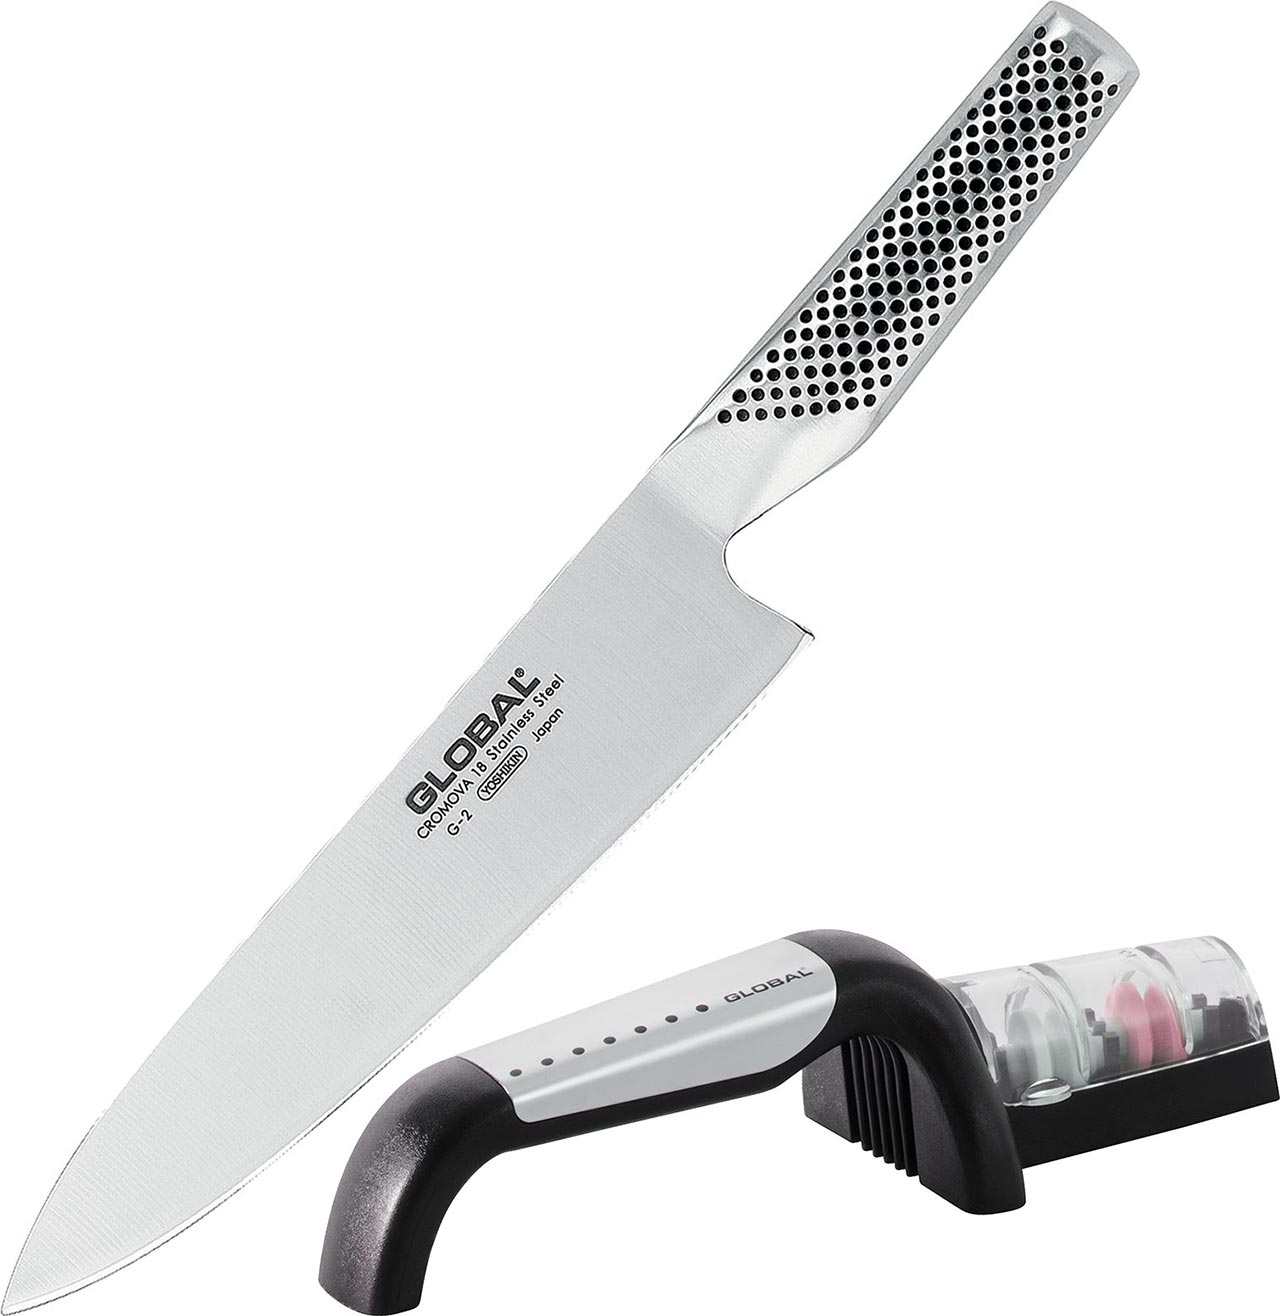 Global Cook's Knife 20cm & 2-stage Sharpener 2pc Set G-291/SB